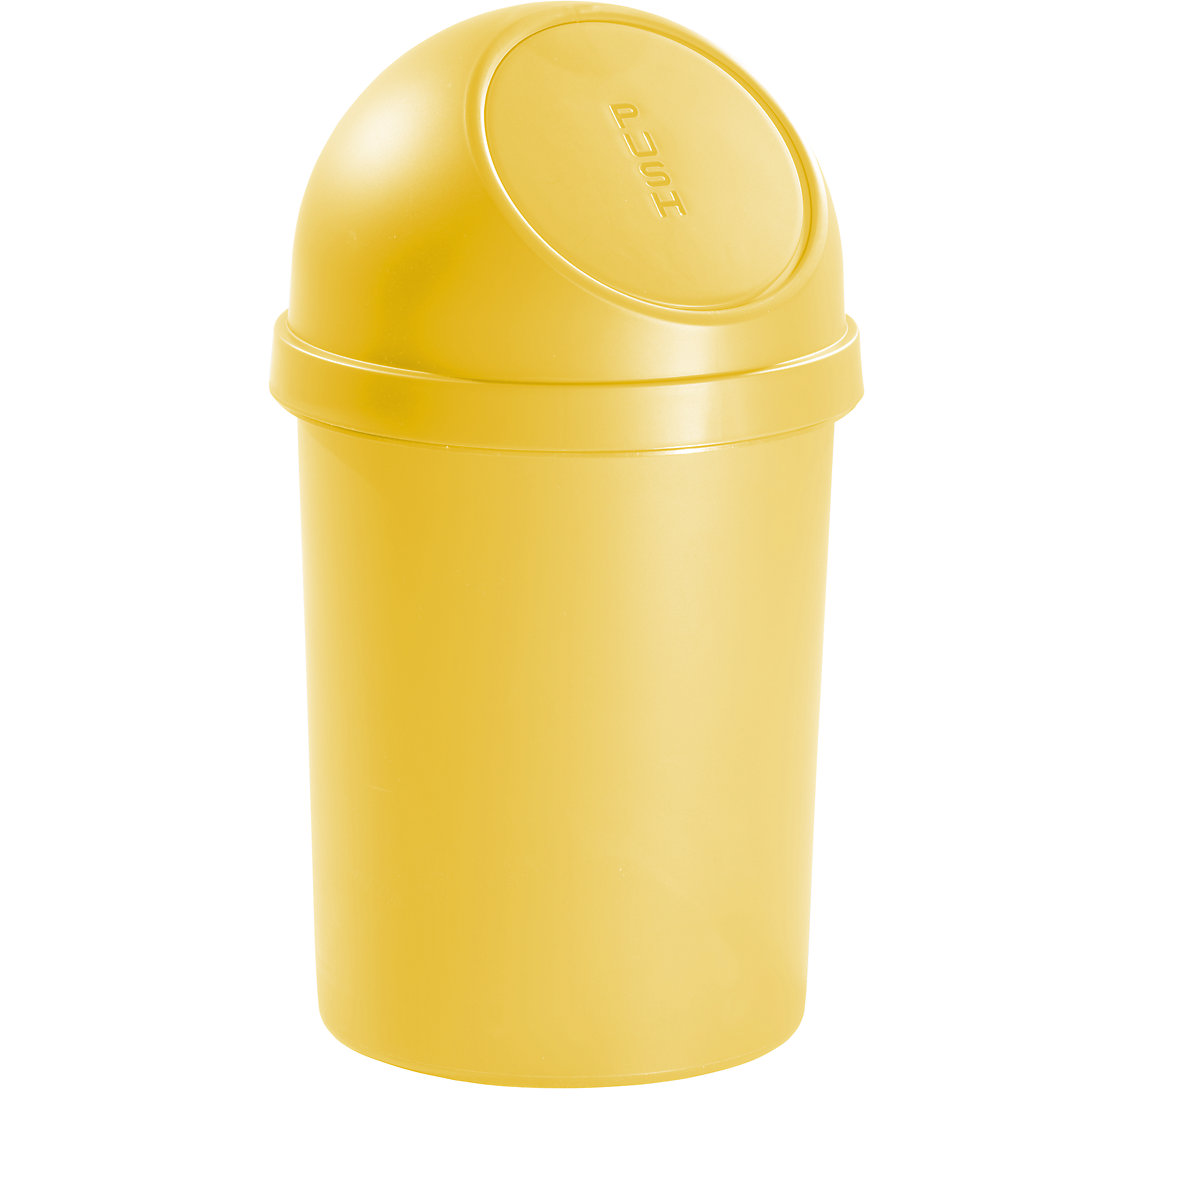 helit – Samozavírací nádoba na odpadky z plastu, objem 45 l, v x Ø 700 x 400 mm, žlutá, bal.j. 2 ks